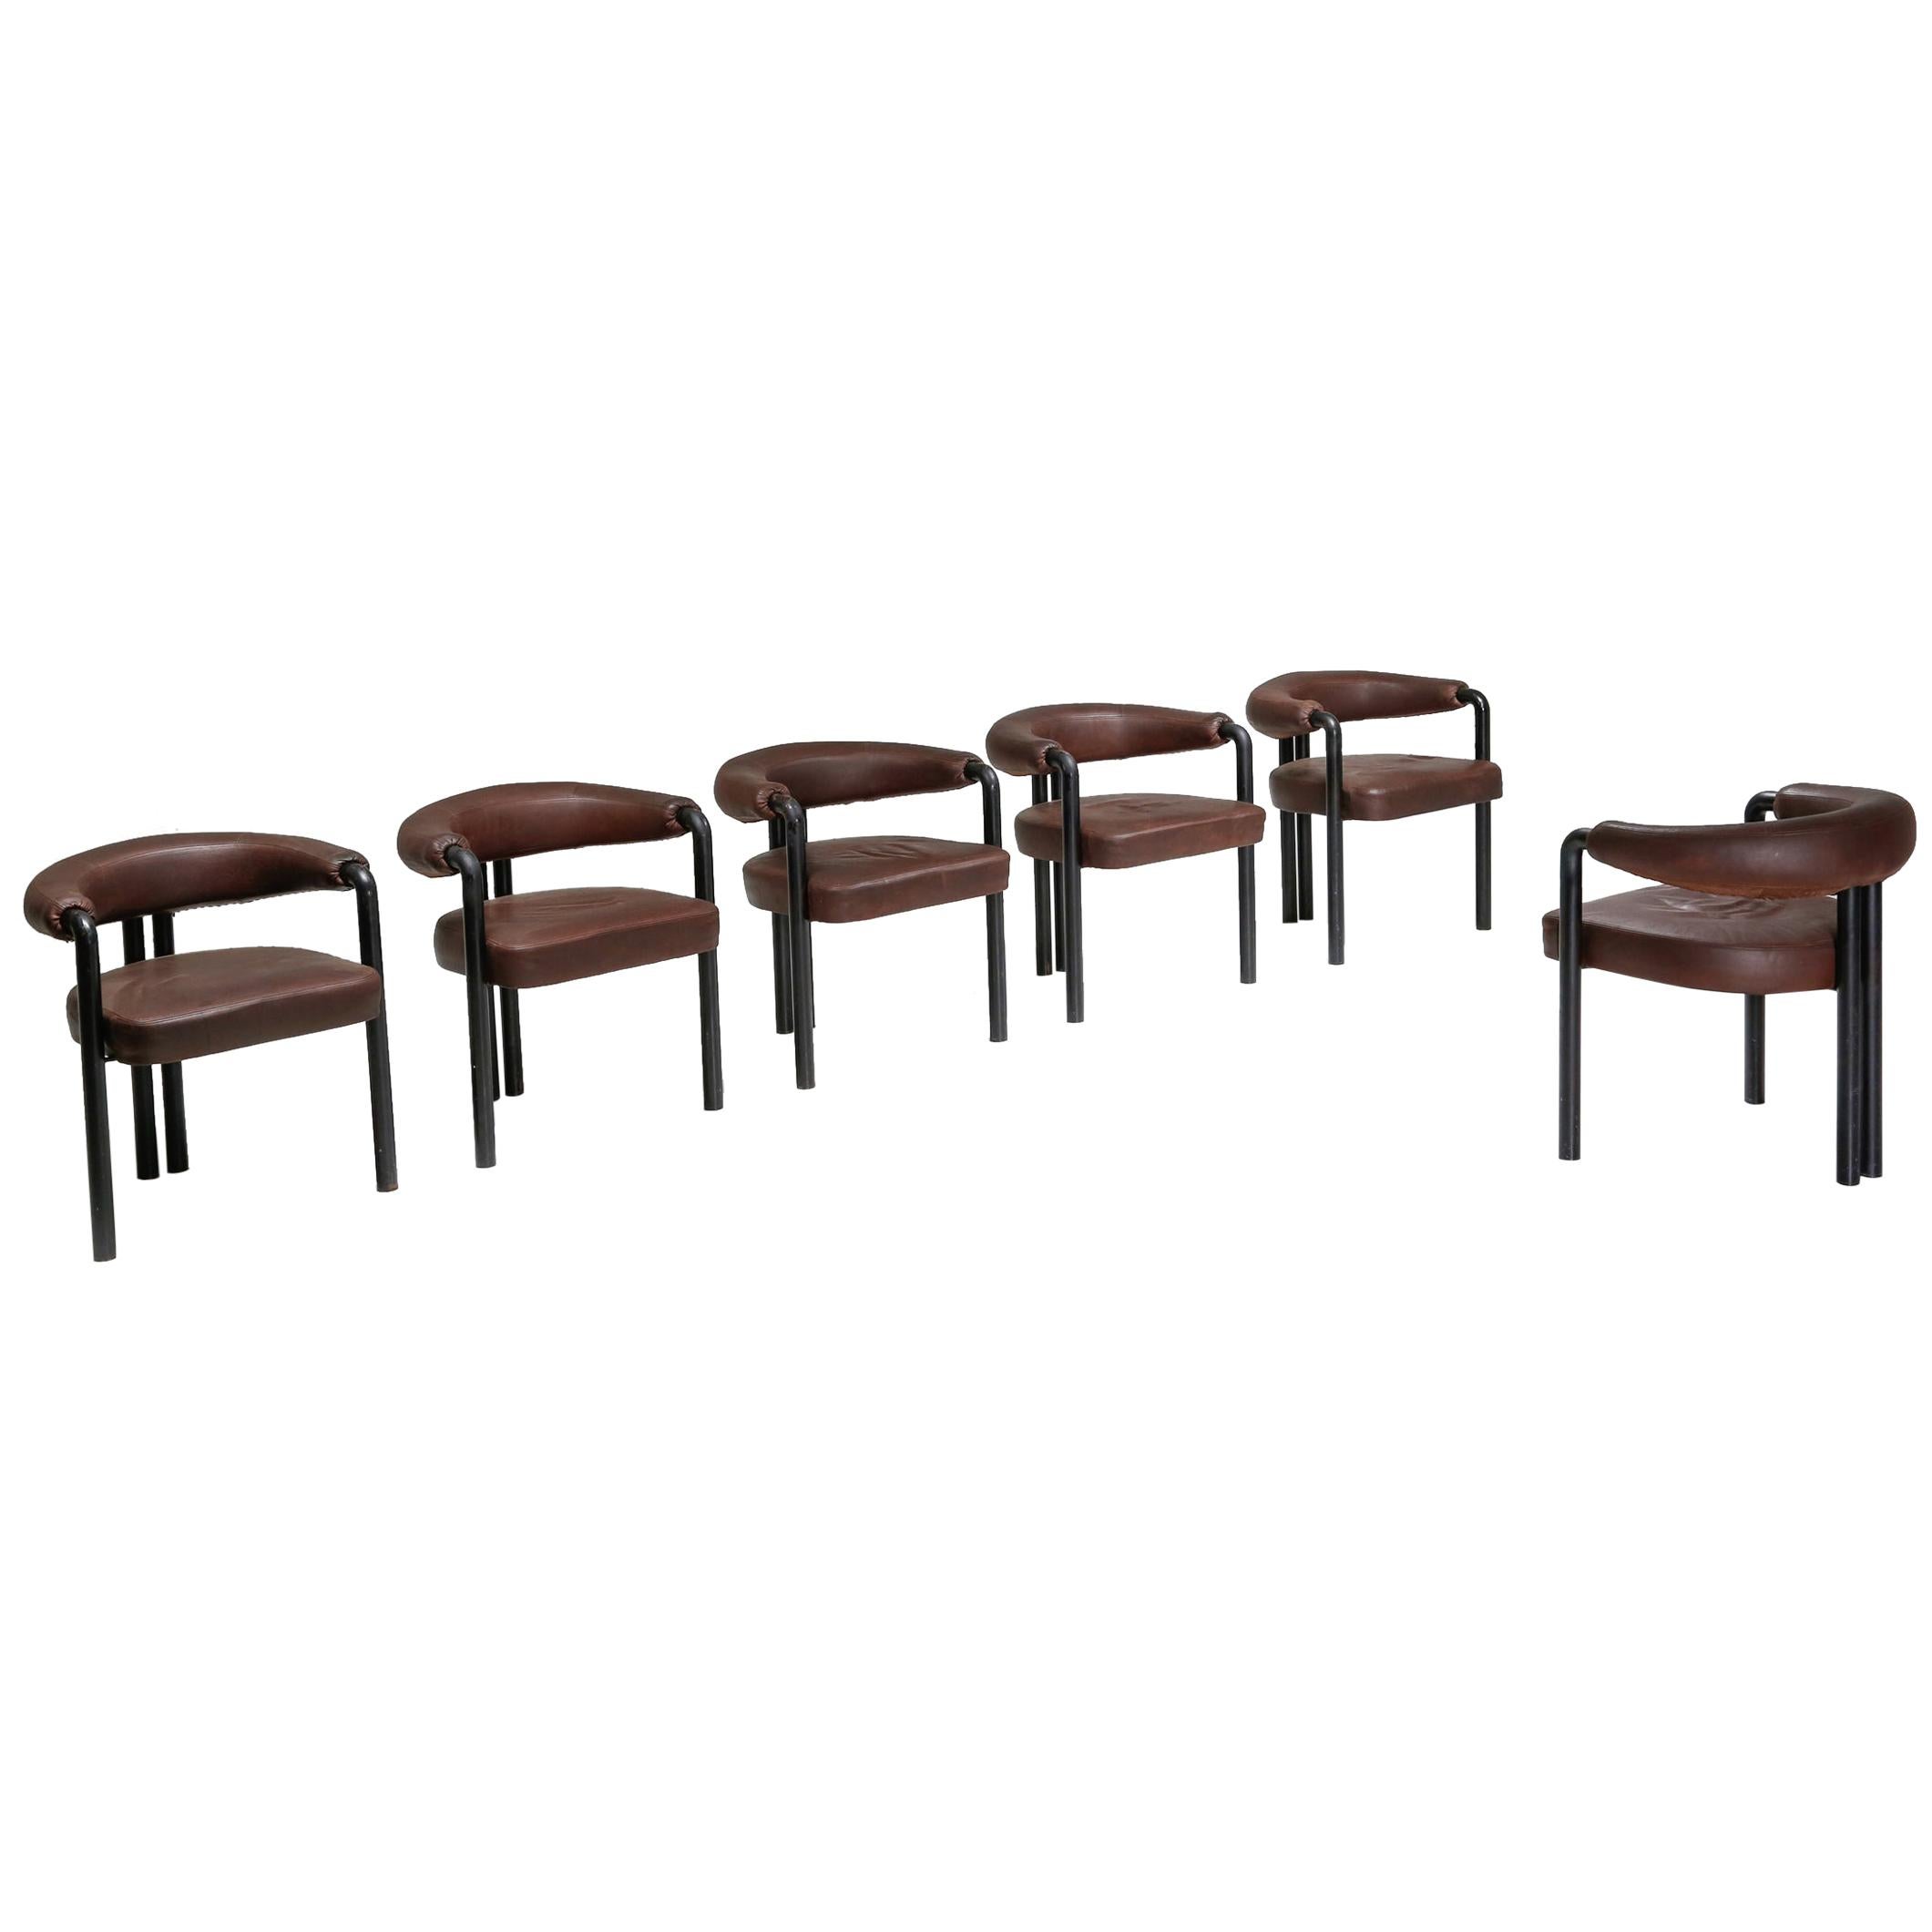 De Sede Dining Chairs by Nienkamper in Brown Leather and Black Tubular Steel